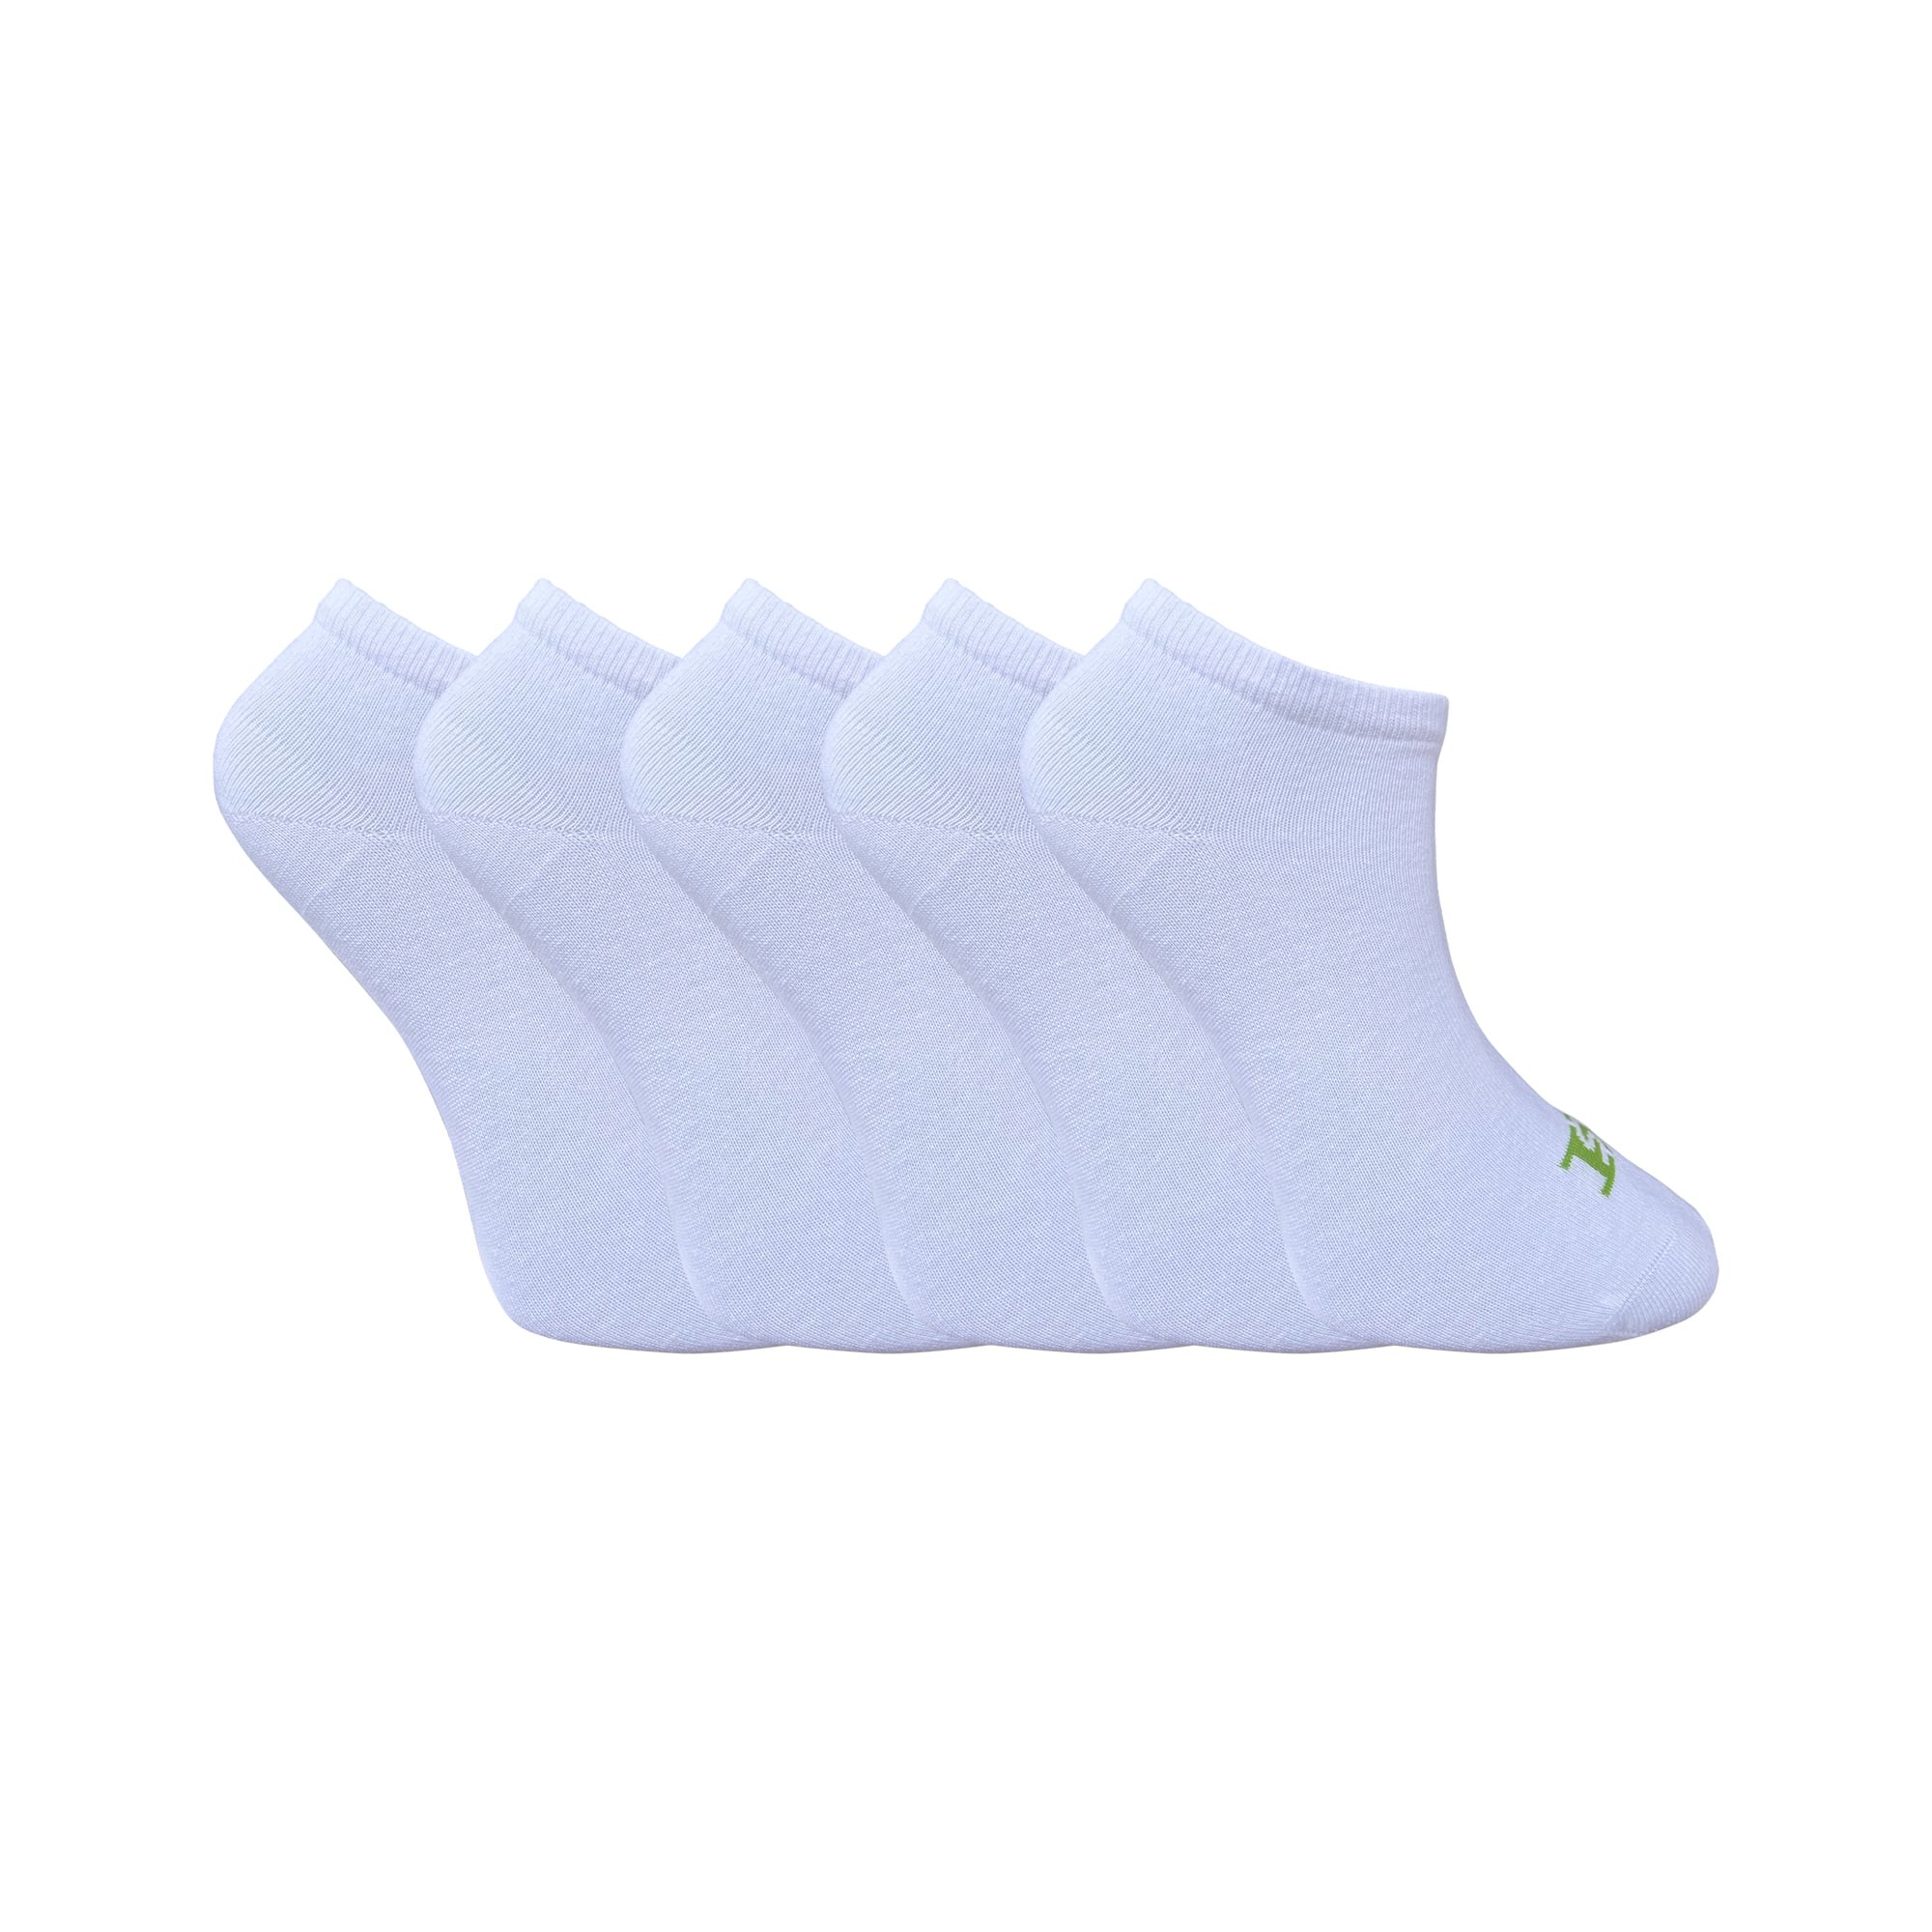 5'li Unisex Patik Çorap İkili - Beyaz